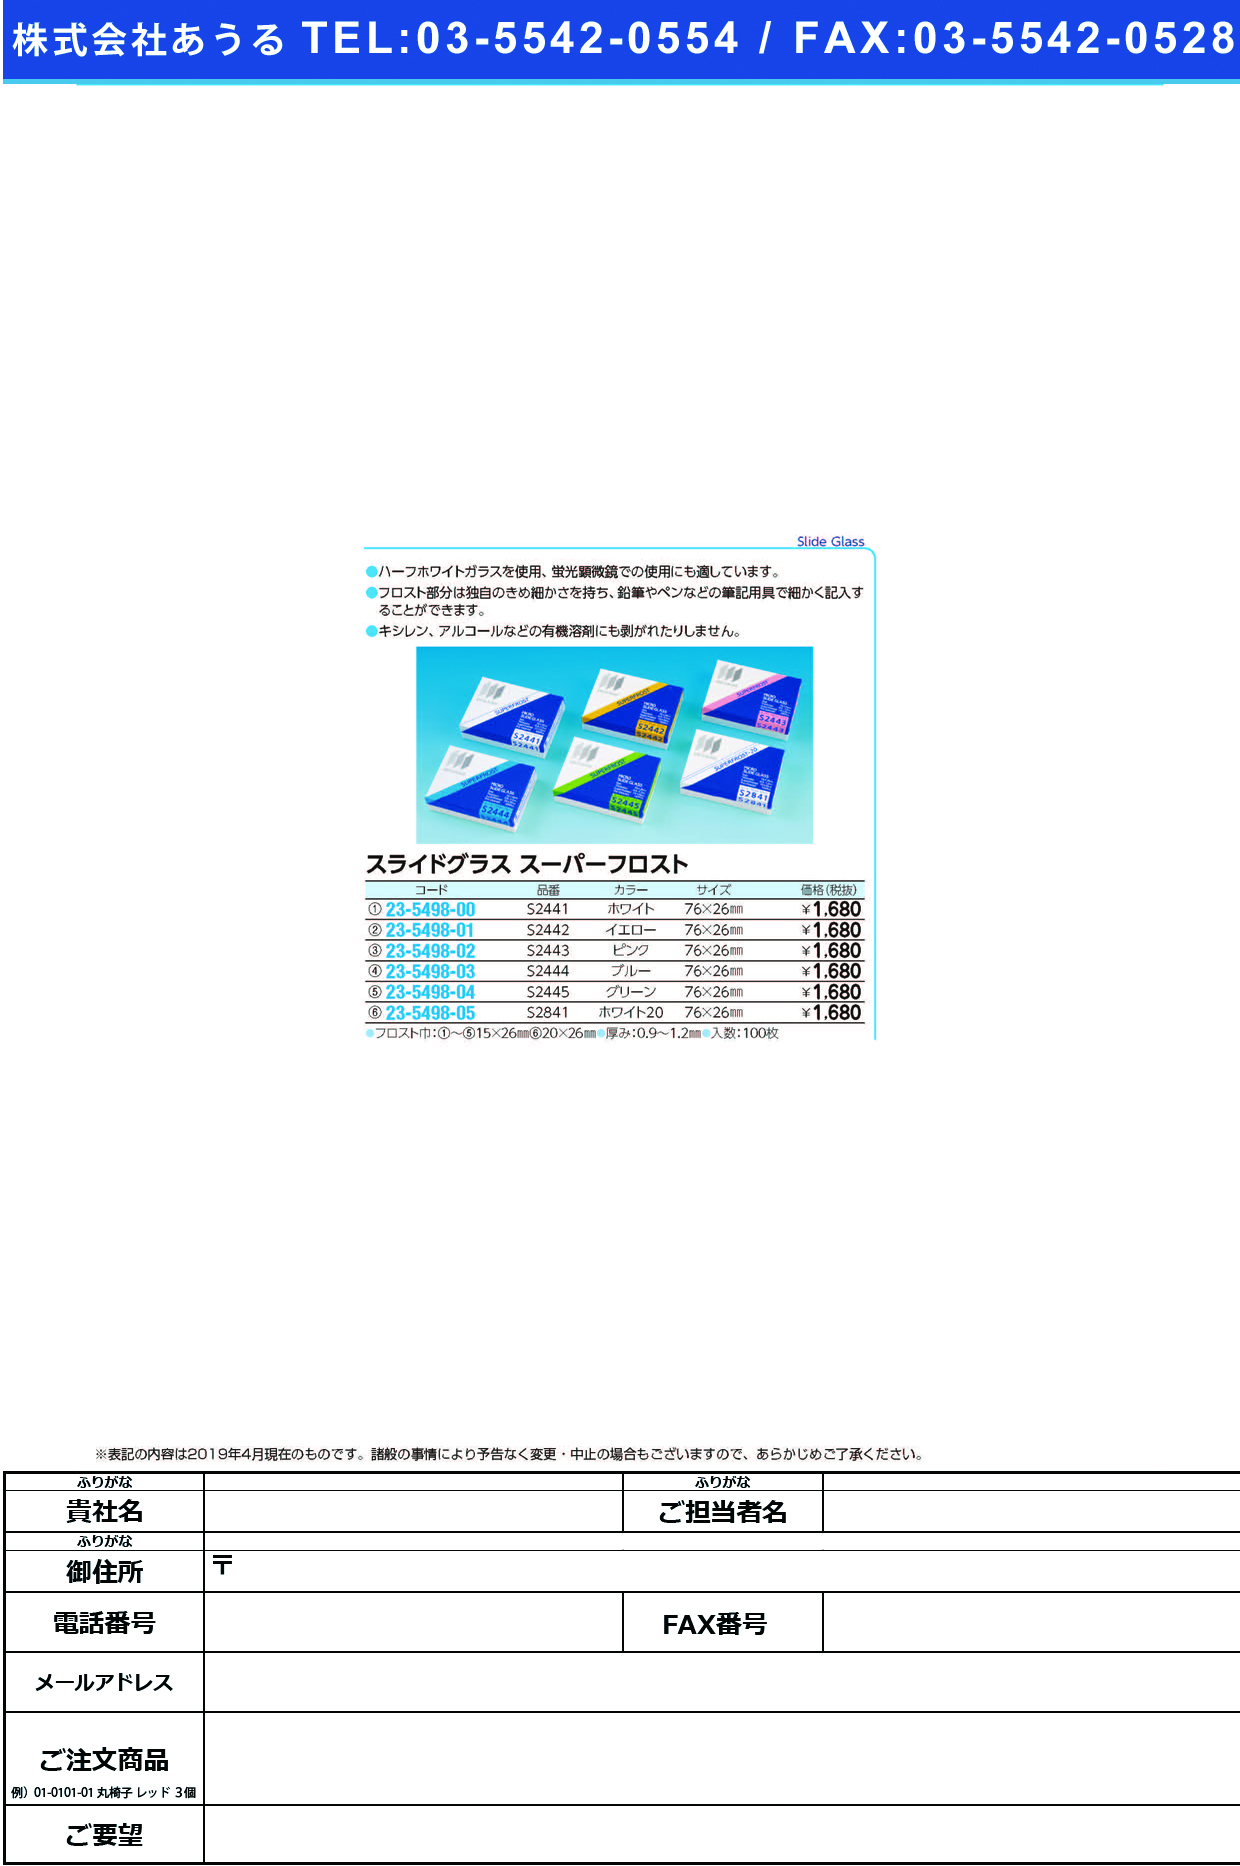 (23-5498-00)松浪スライドグラススーパーフロスト S2441(ﾎﾜｲﾄ)100ﾏｲ ﾏﾂﾅﾐｽﾗｲﾄﾞｸﾞﾗｽｽｰﾊﾟｰﾌﾛ【1箱単位】【2019年カタログ商品】